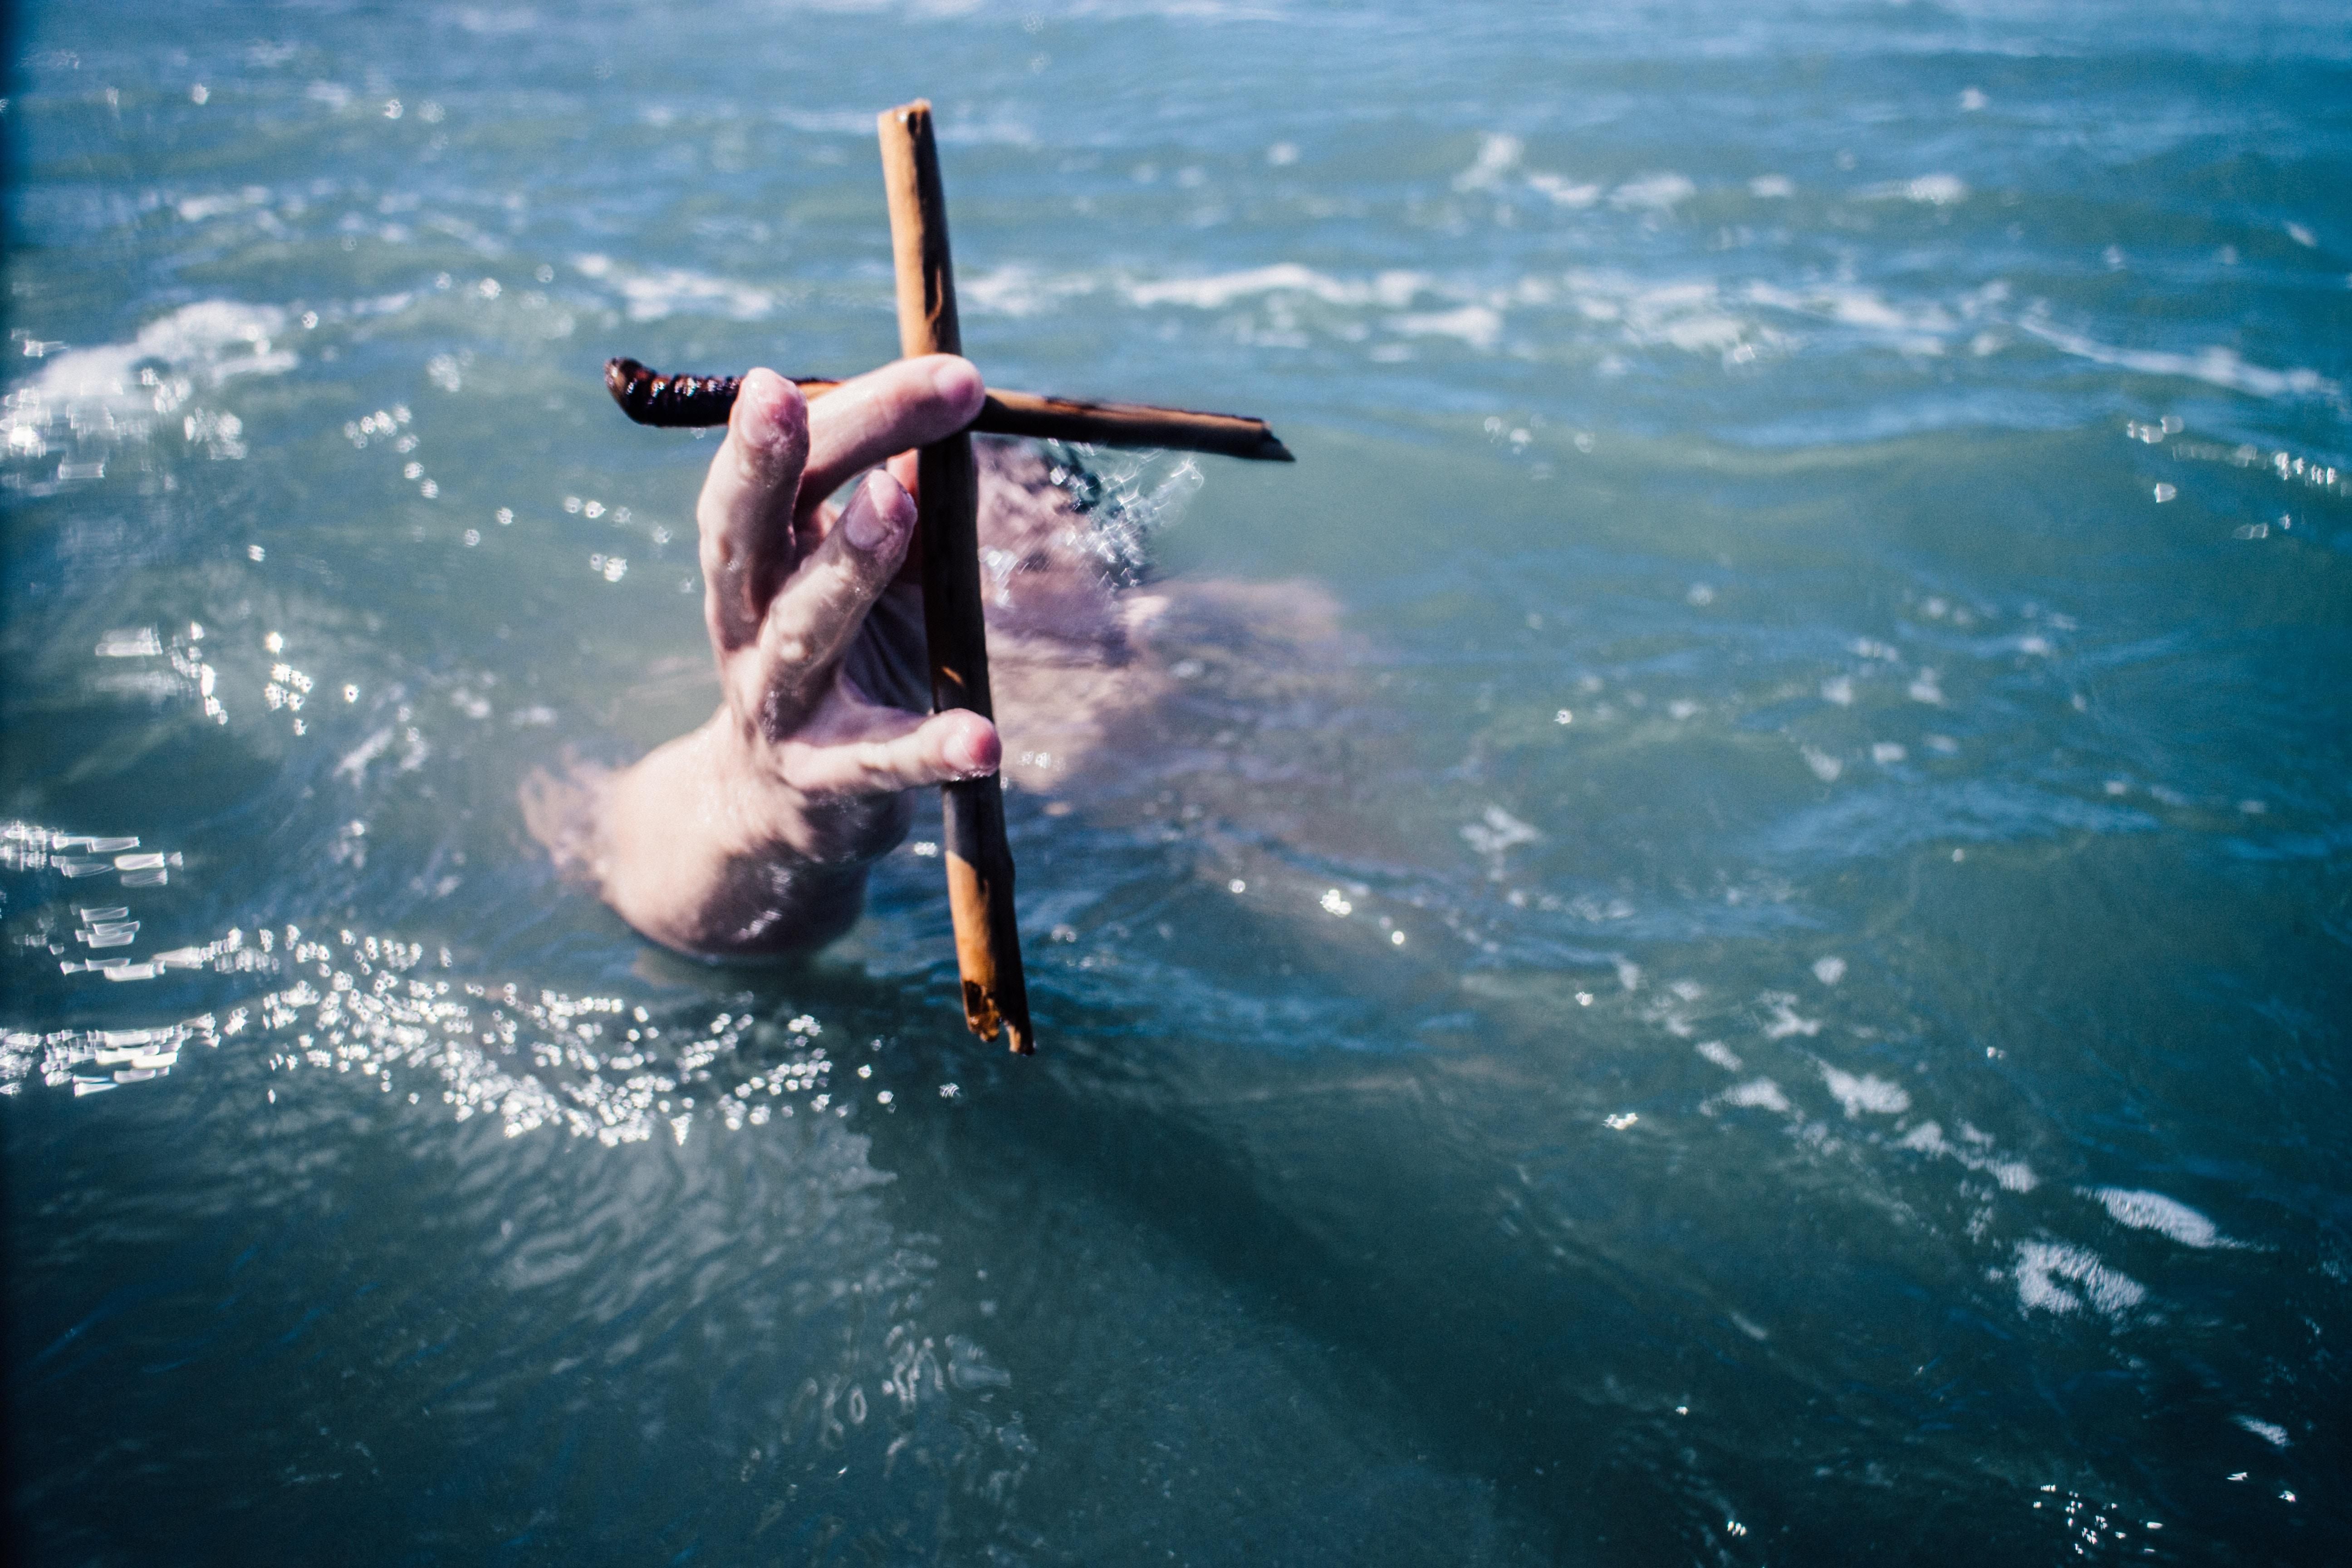 Крещение 2019 - что нельзя делать 19 января 2019 - приметы праздника Крещение Господне